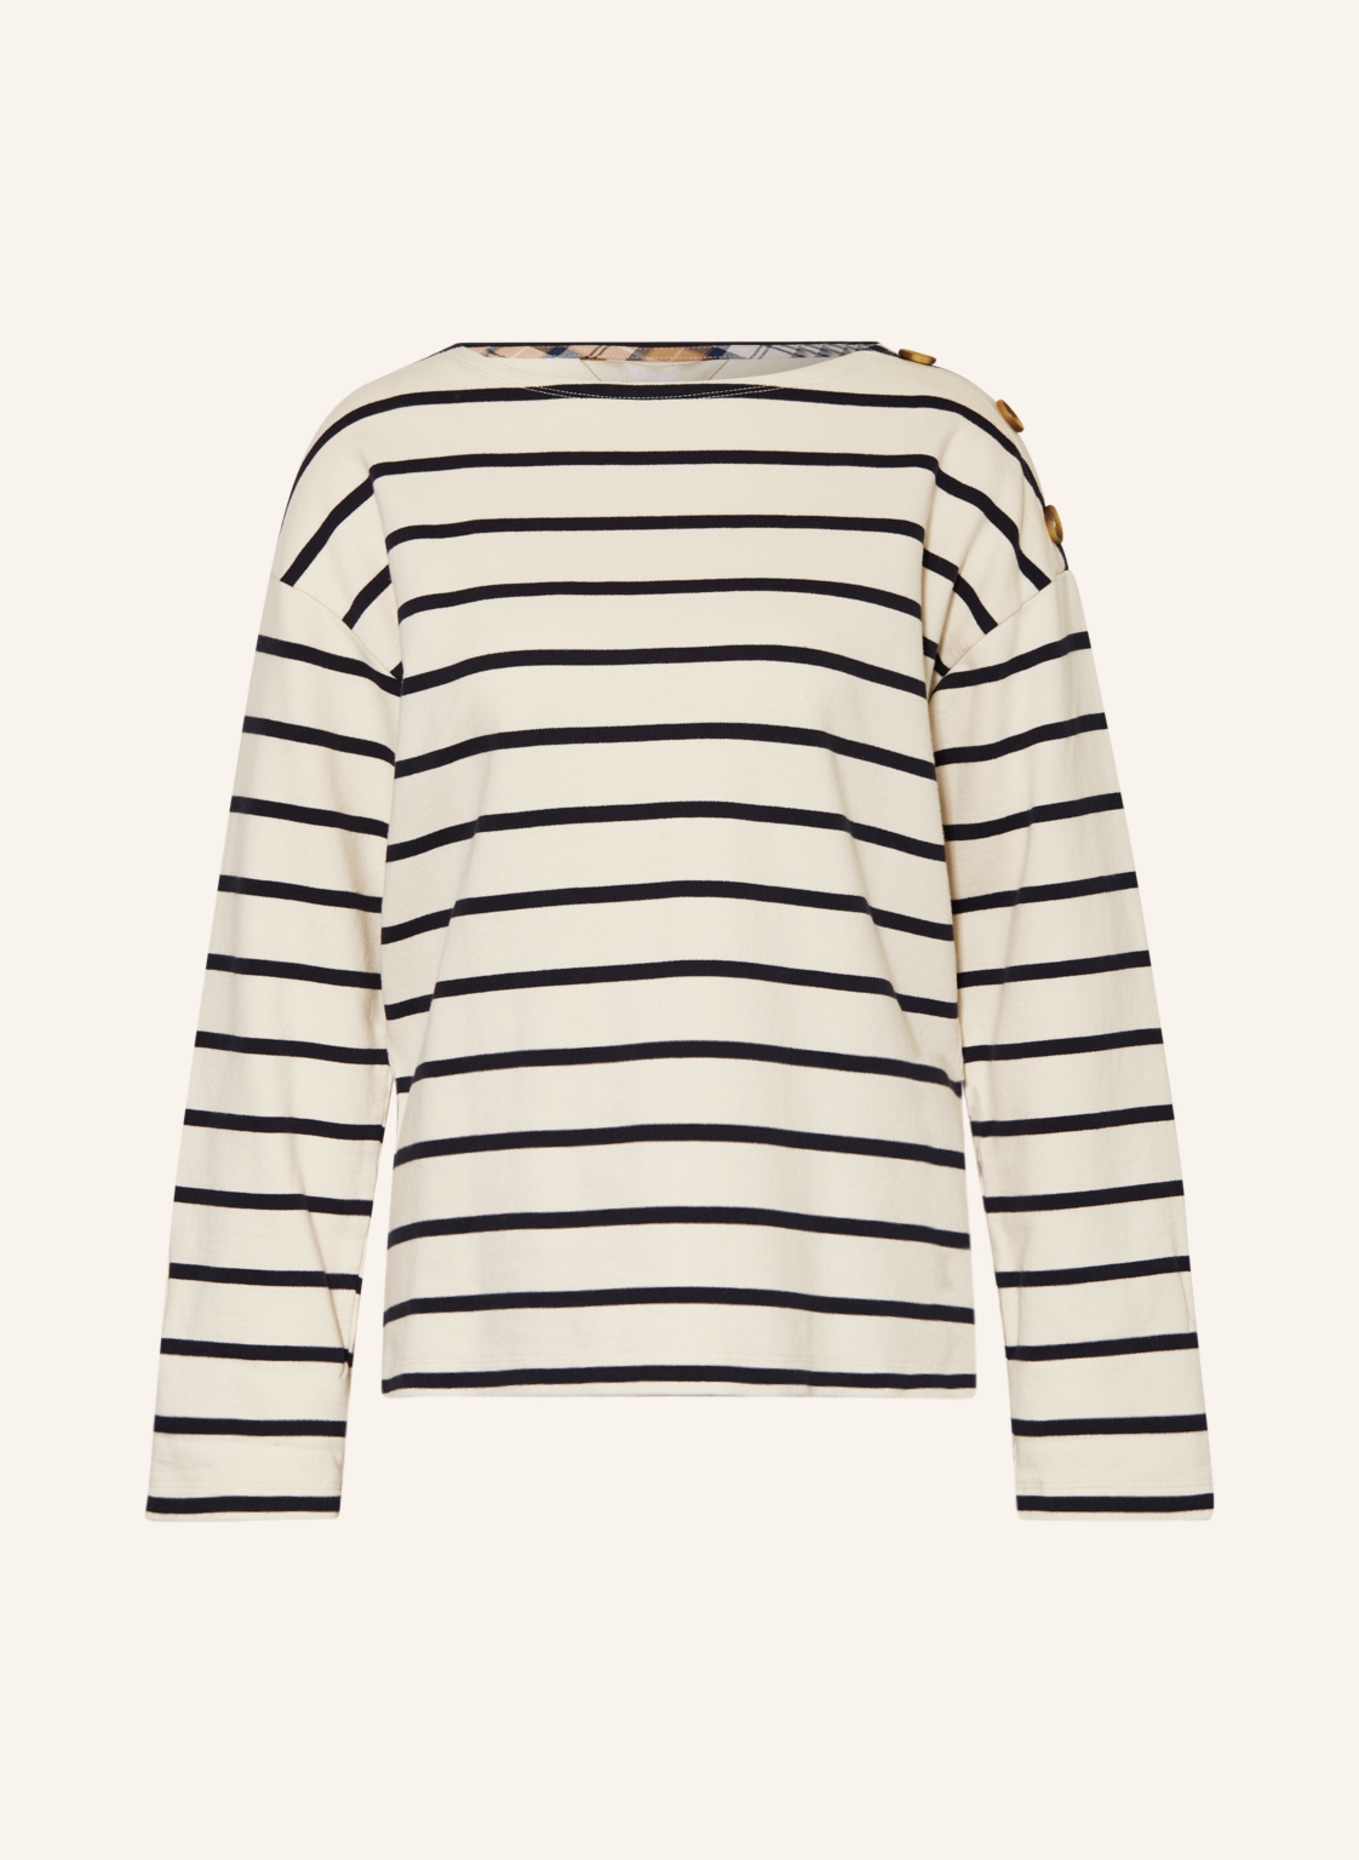 Barbour Sweatshirt CAROLINE, Farbe: CREME/ SCHWARZ (Bild 1)